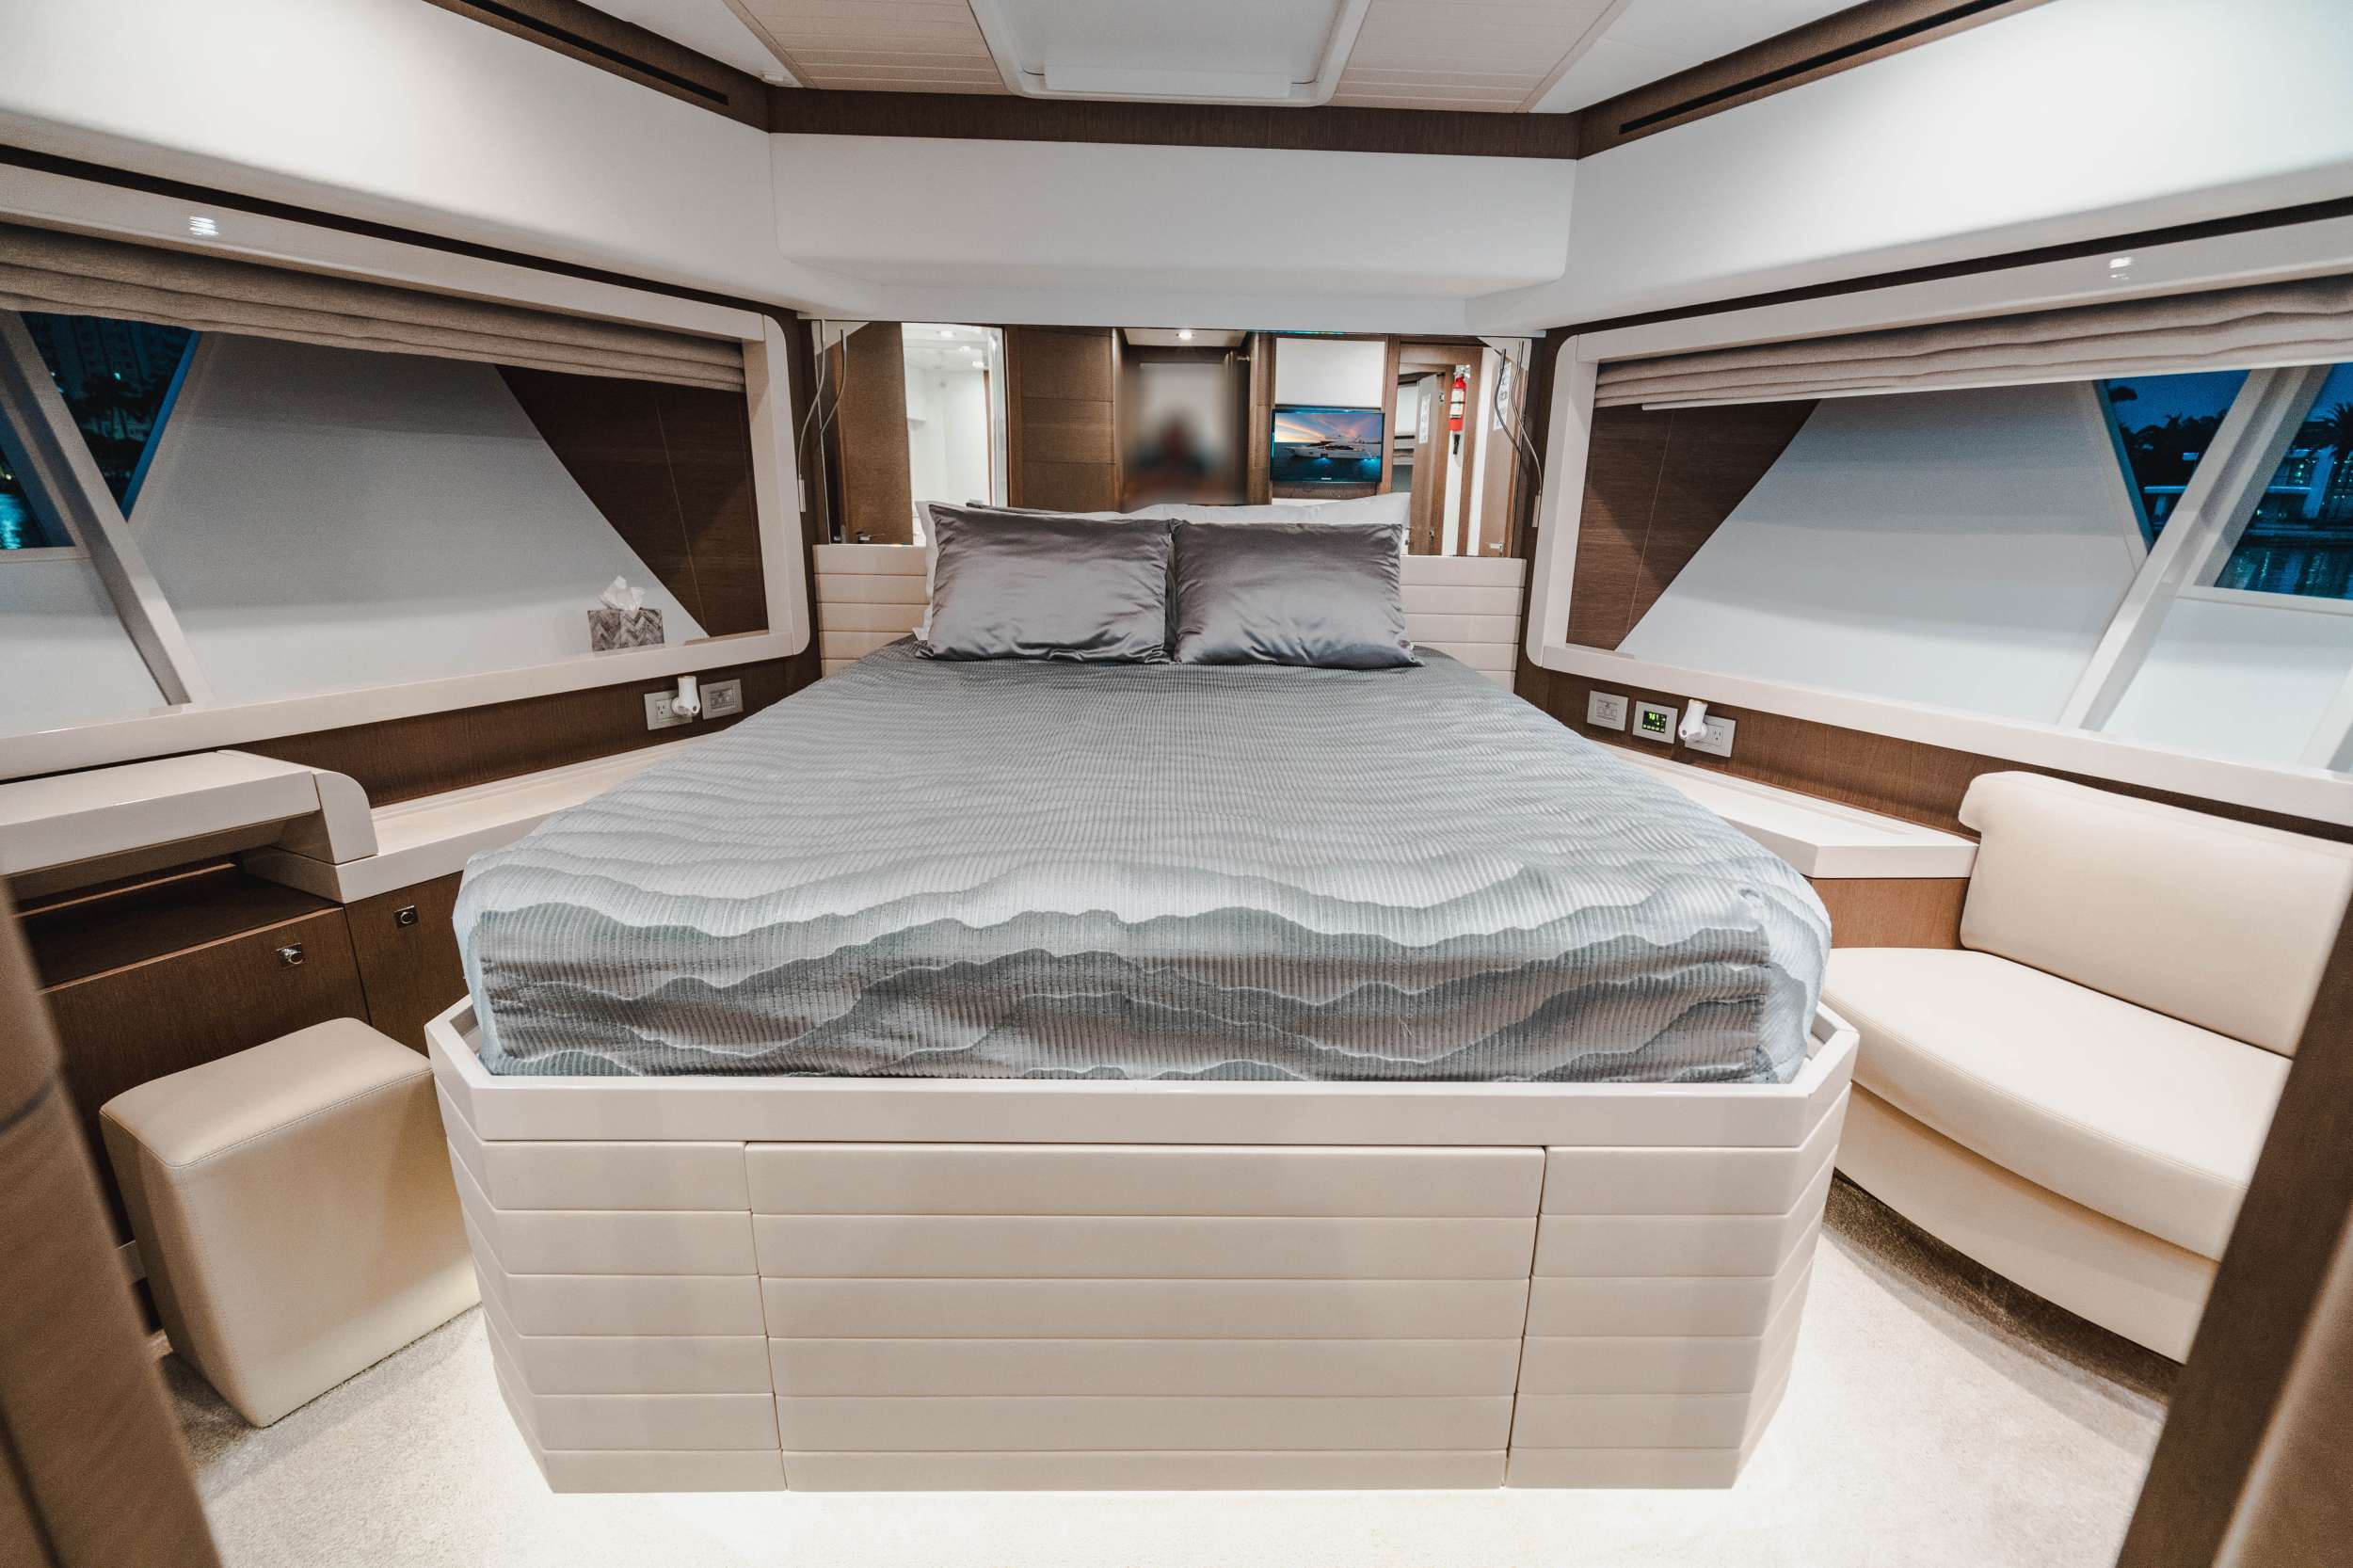 Top Shelf Yacht Charter - Guest Bedroom